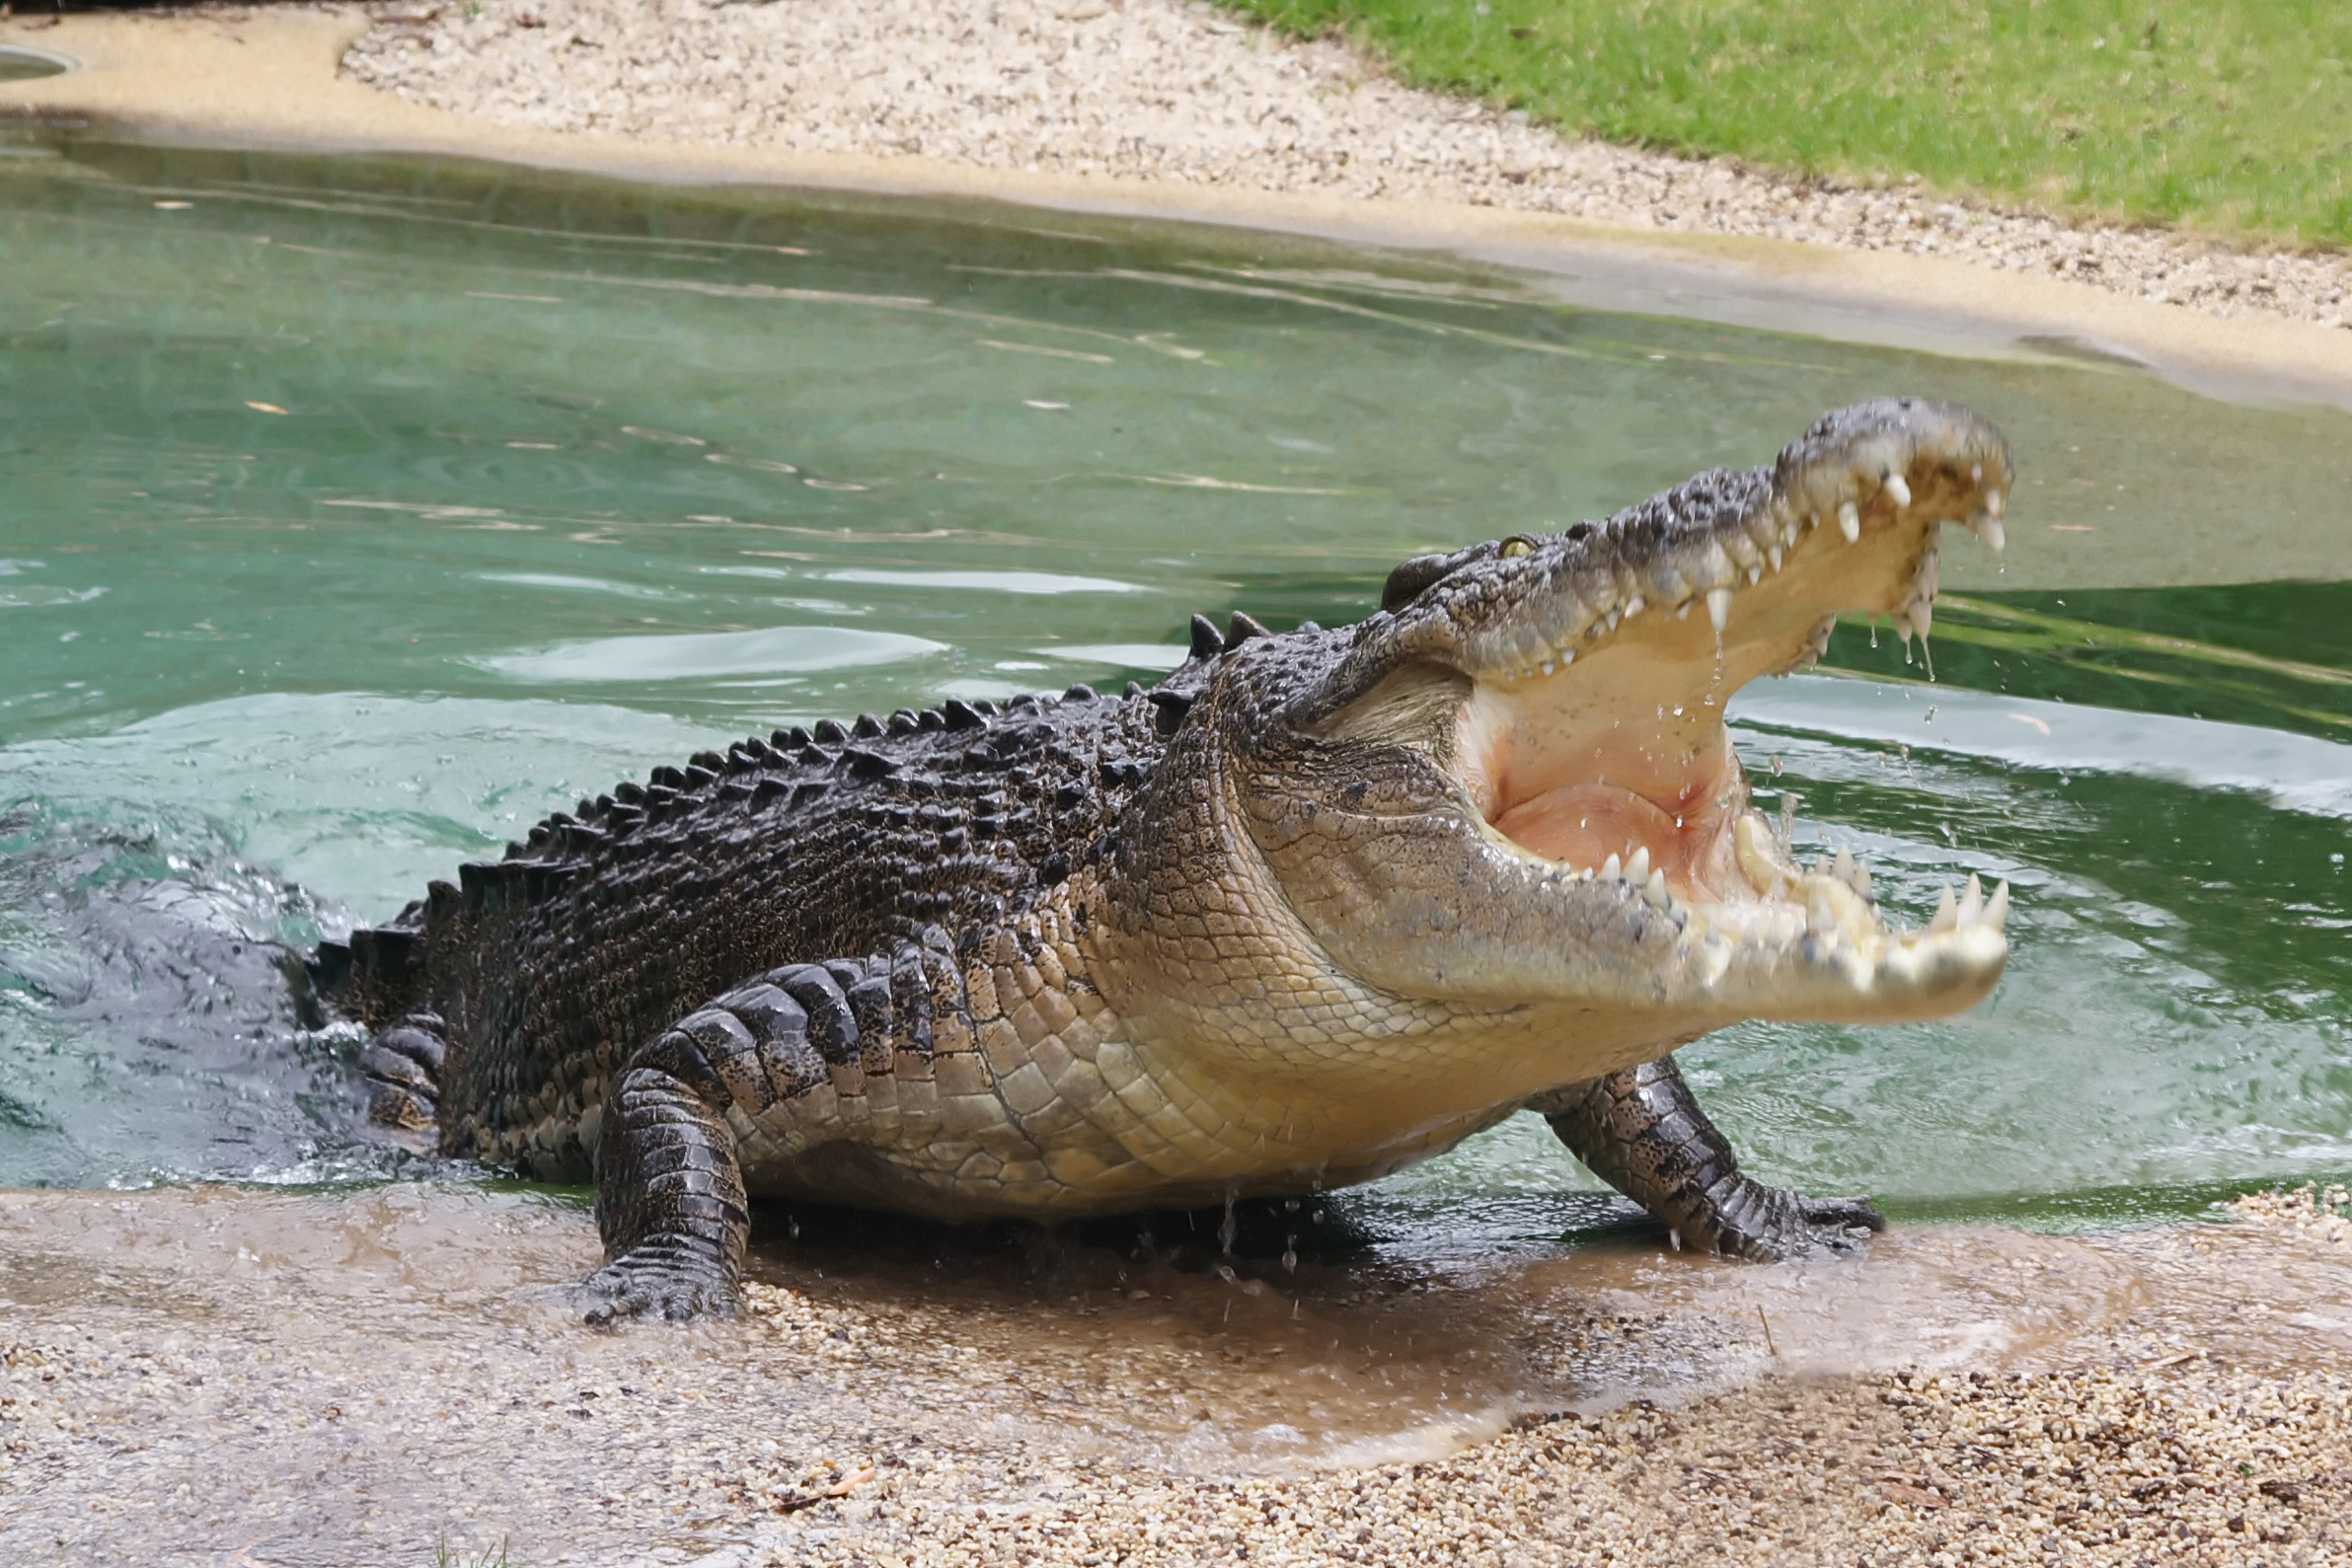 Гребнистый крокодил рисунок